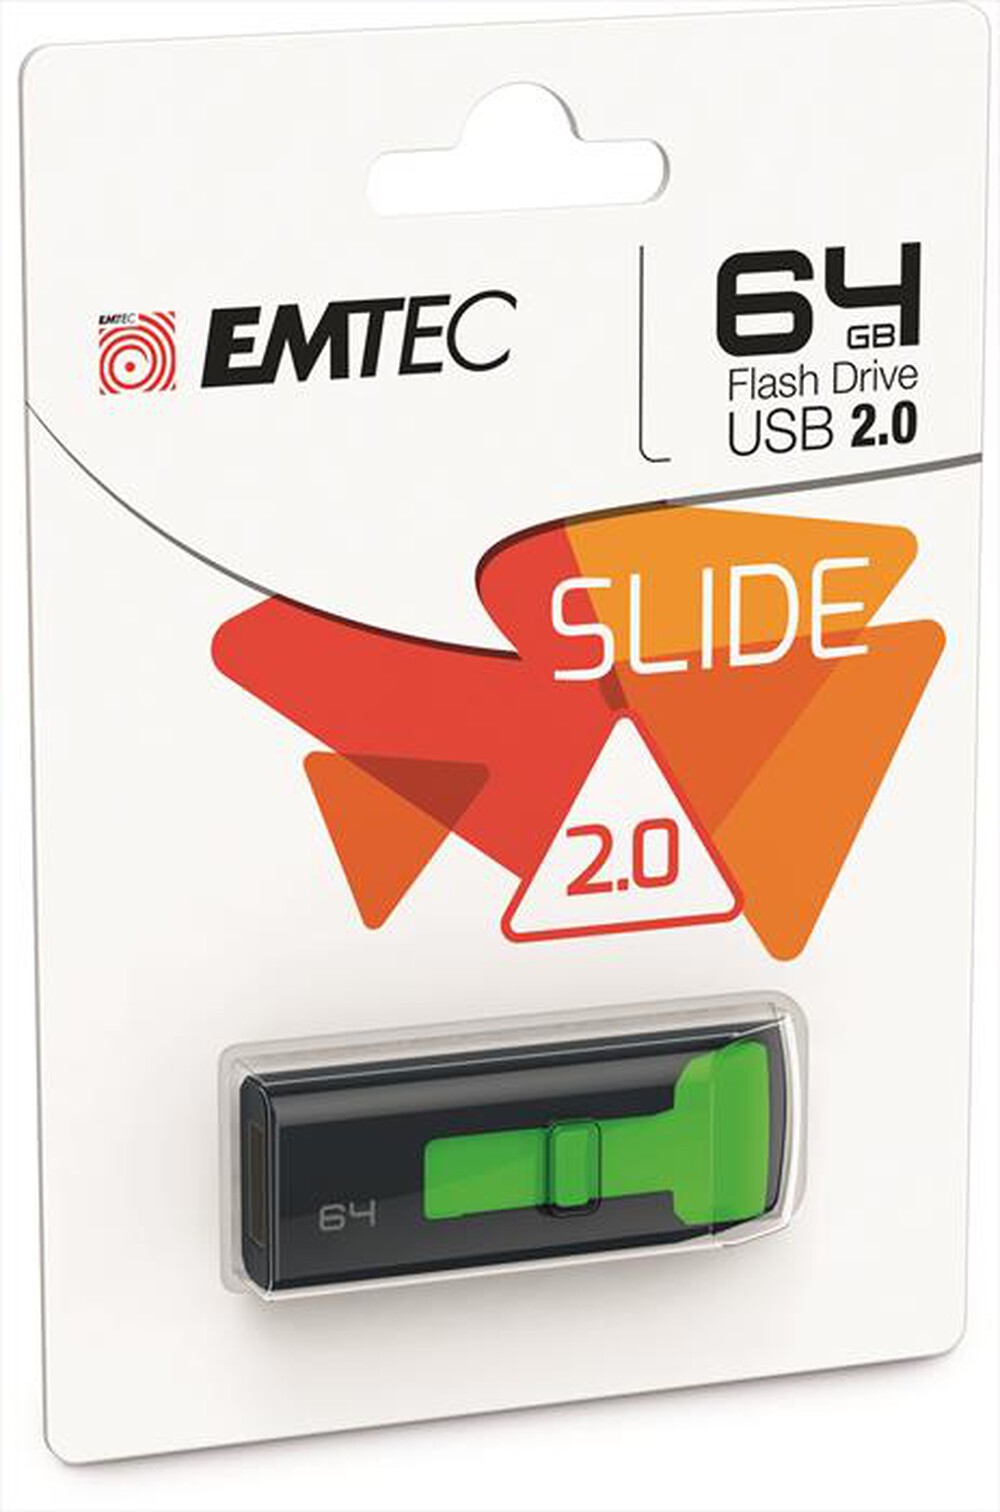 "EMTEC - EMTEC SLIDE C450 64GB-Nero/Verde"